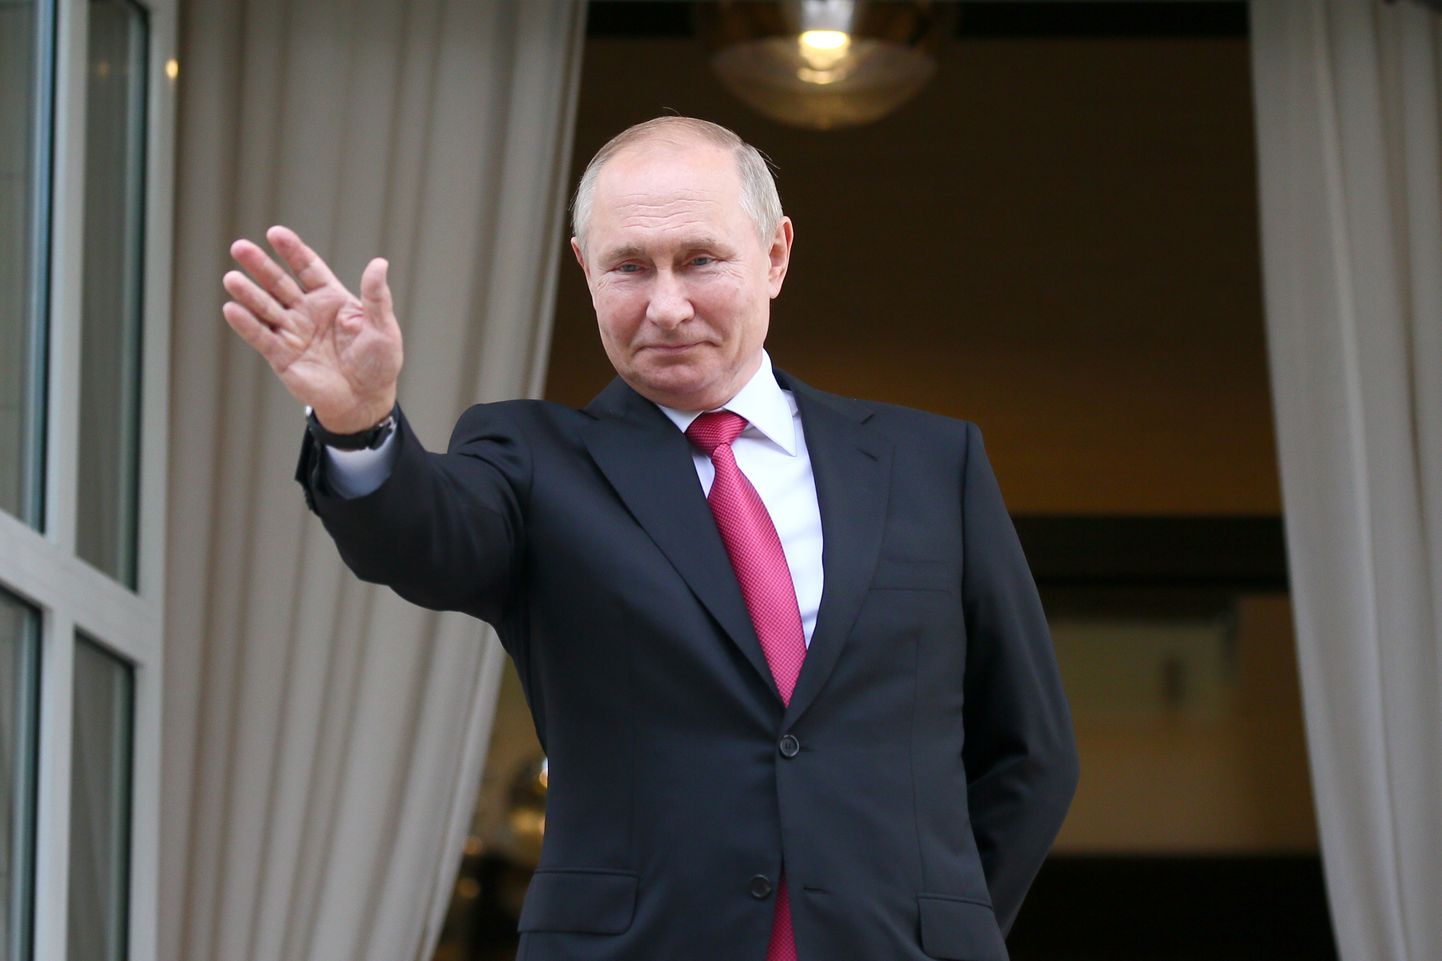 Venemaa president Vladimir Putin lehvitamas 29. septembril 2021 oma Botšarov Rutšei residentsis Türgi presidendile Recep Tayyip Erdoğanile. Seal toimus kahe riigijuhi kohtumine